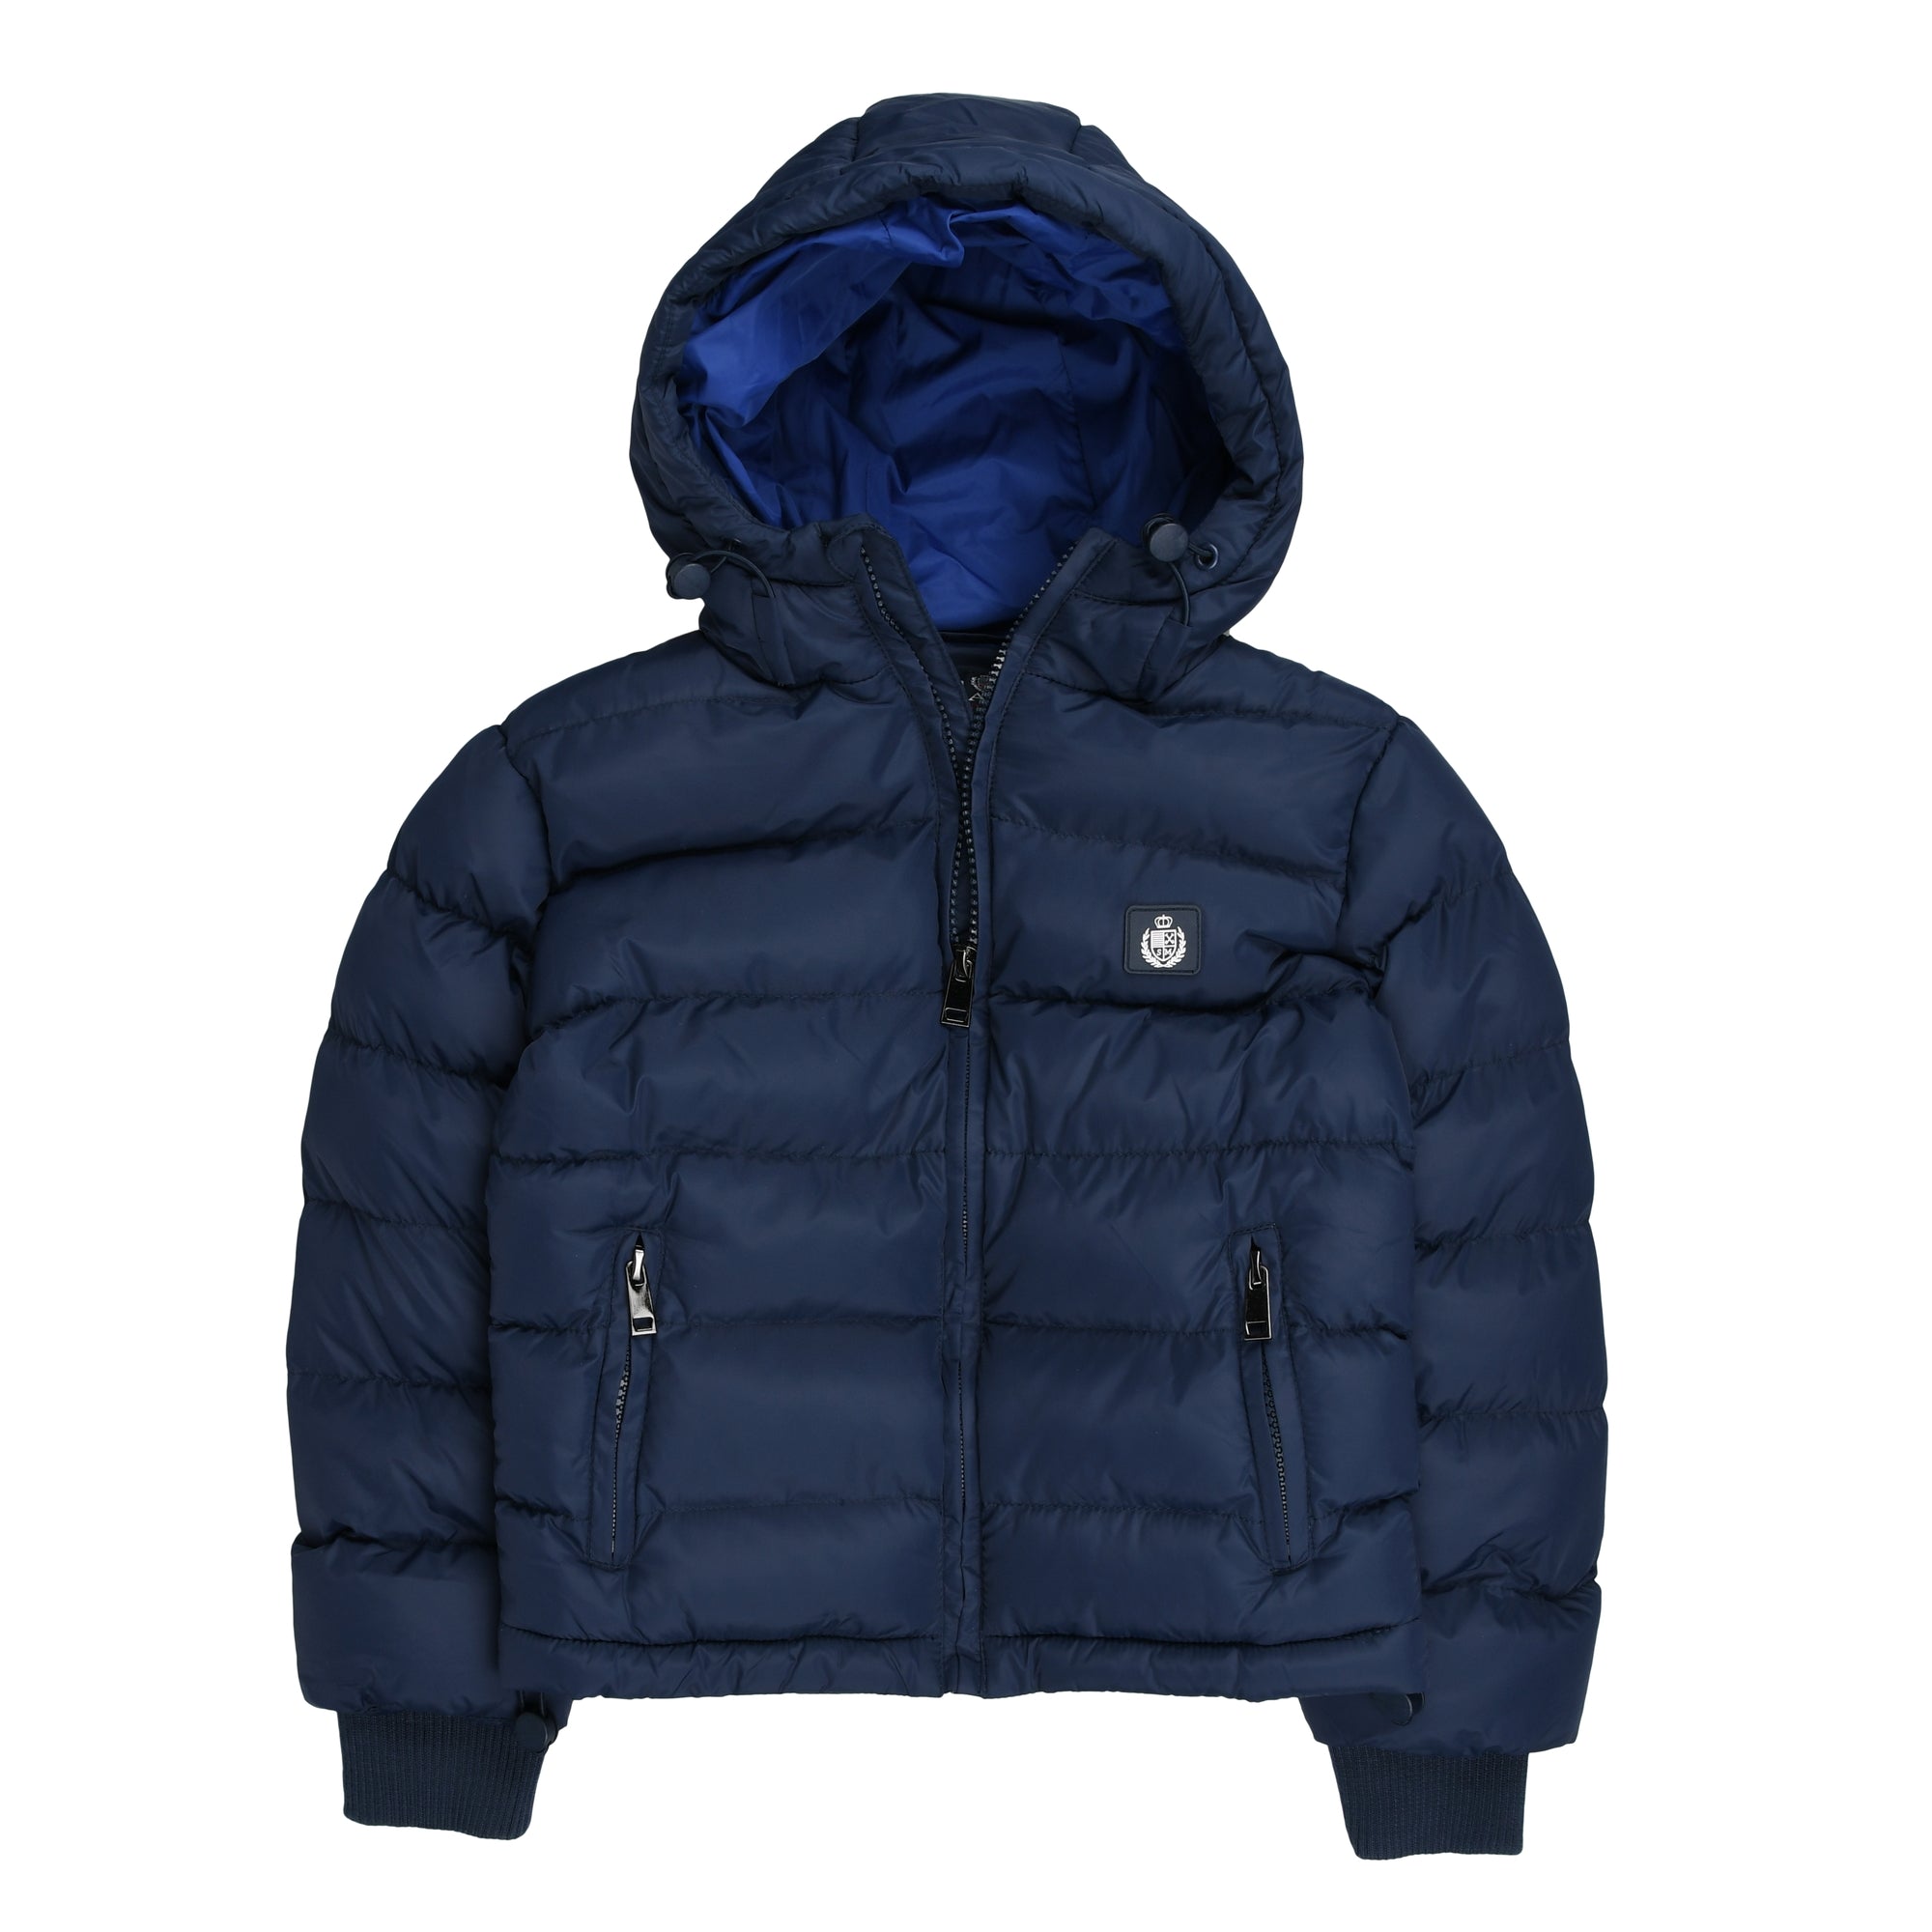 Nylon jacket with hood